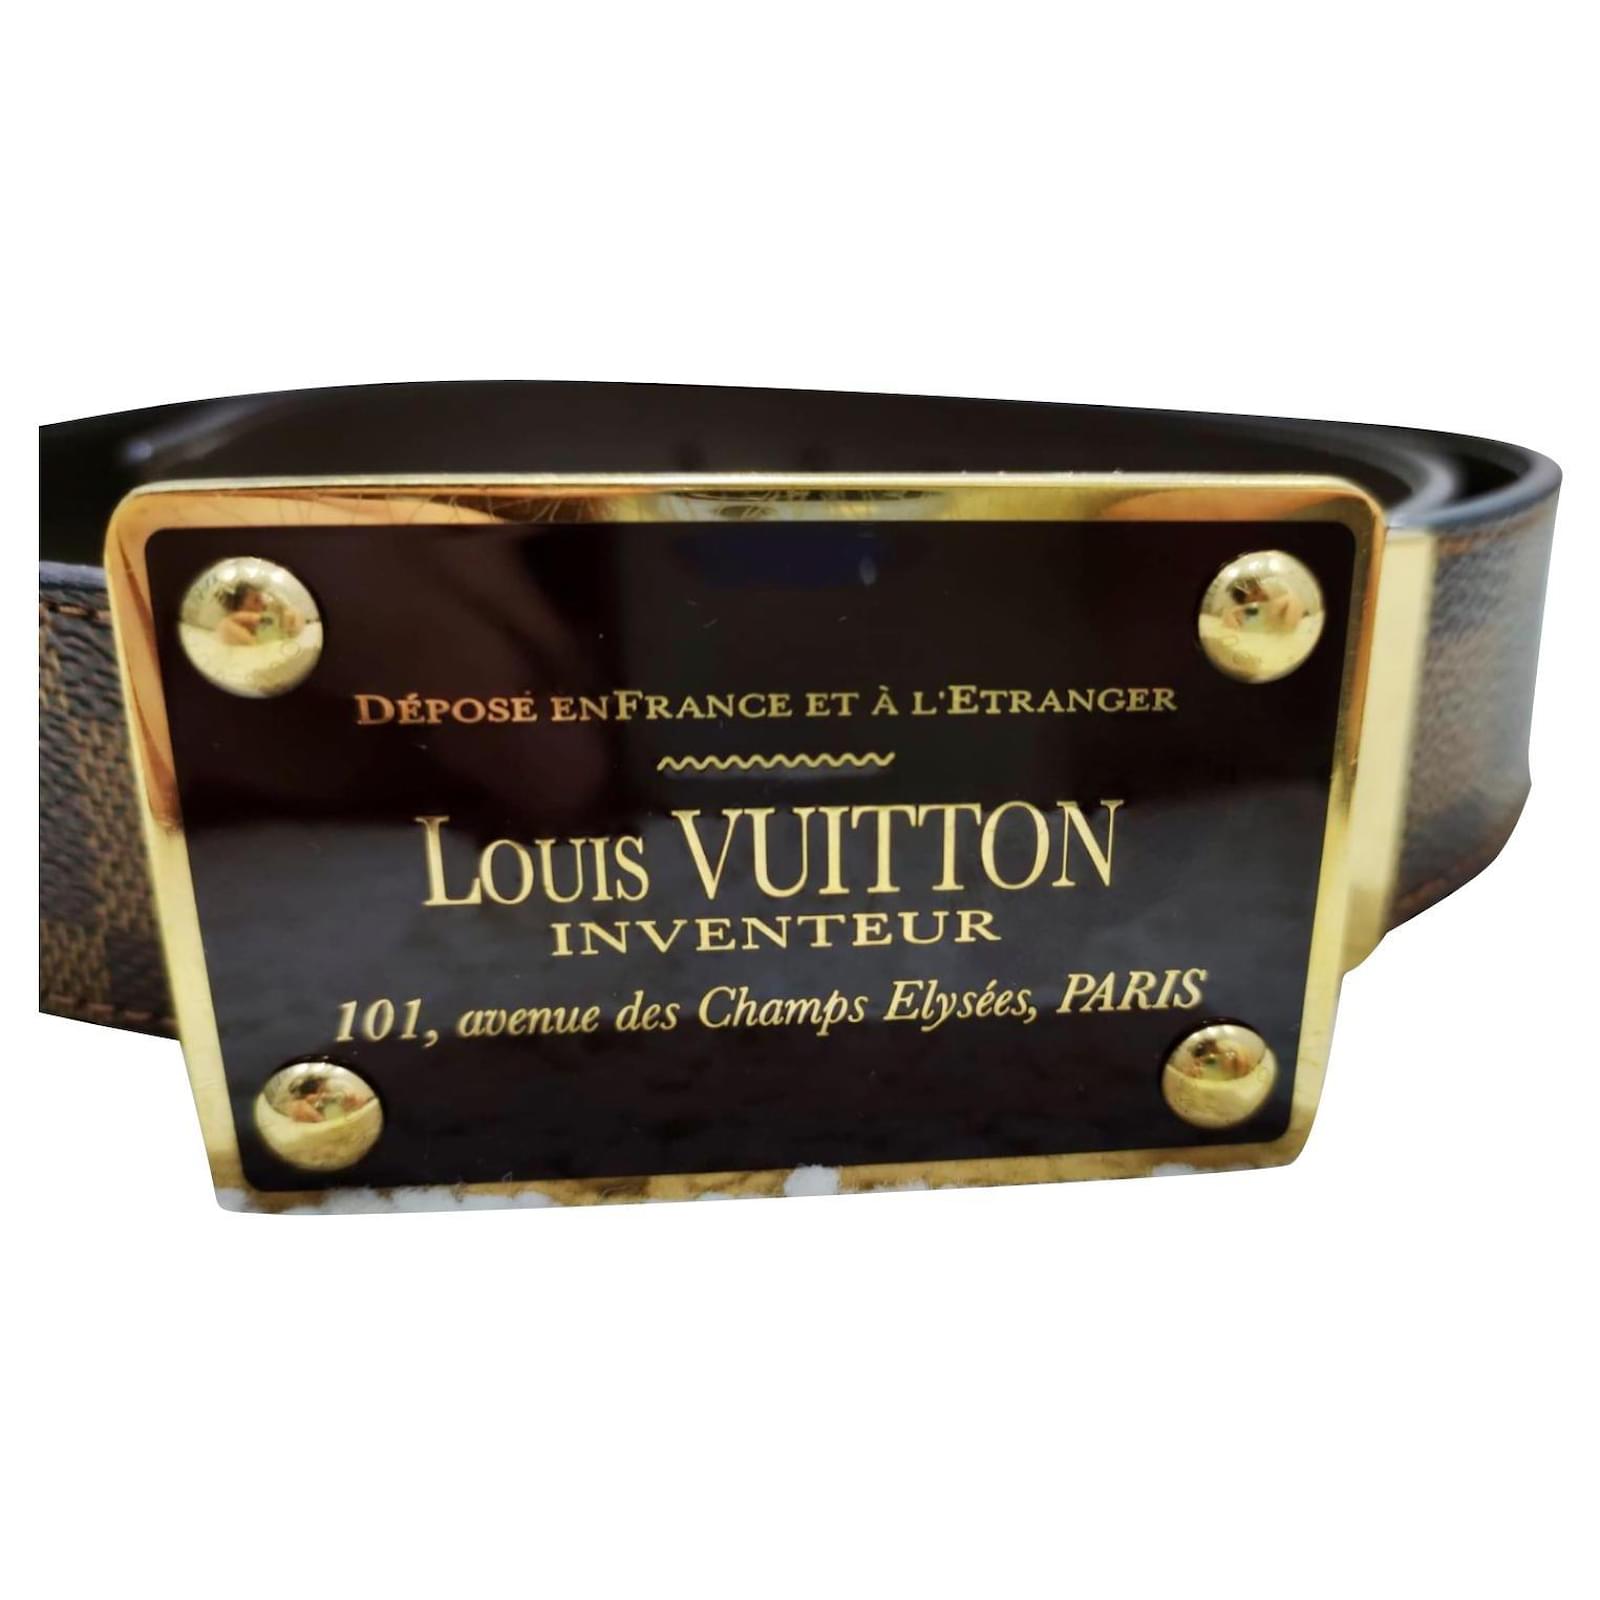 LOUIS VUITTON BLACK DAMIER EMBOSSED INVENTEUR LEATHER BELT – Goldandbags